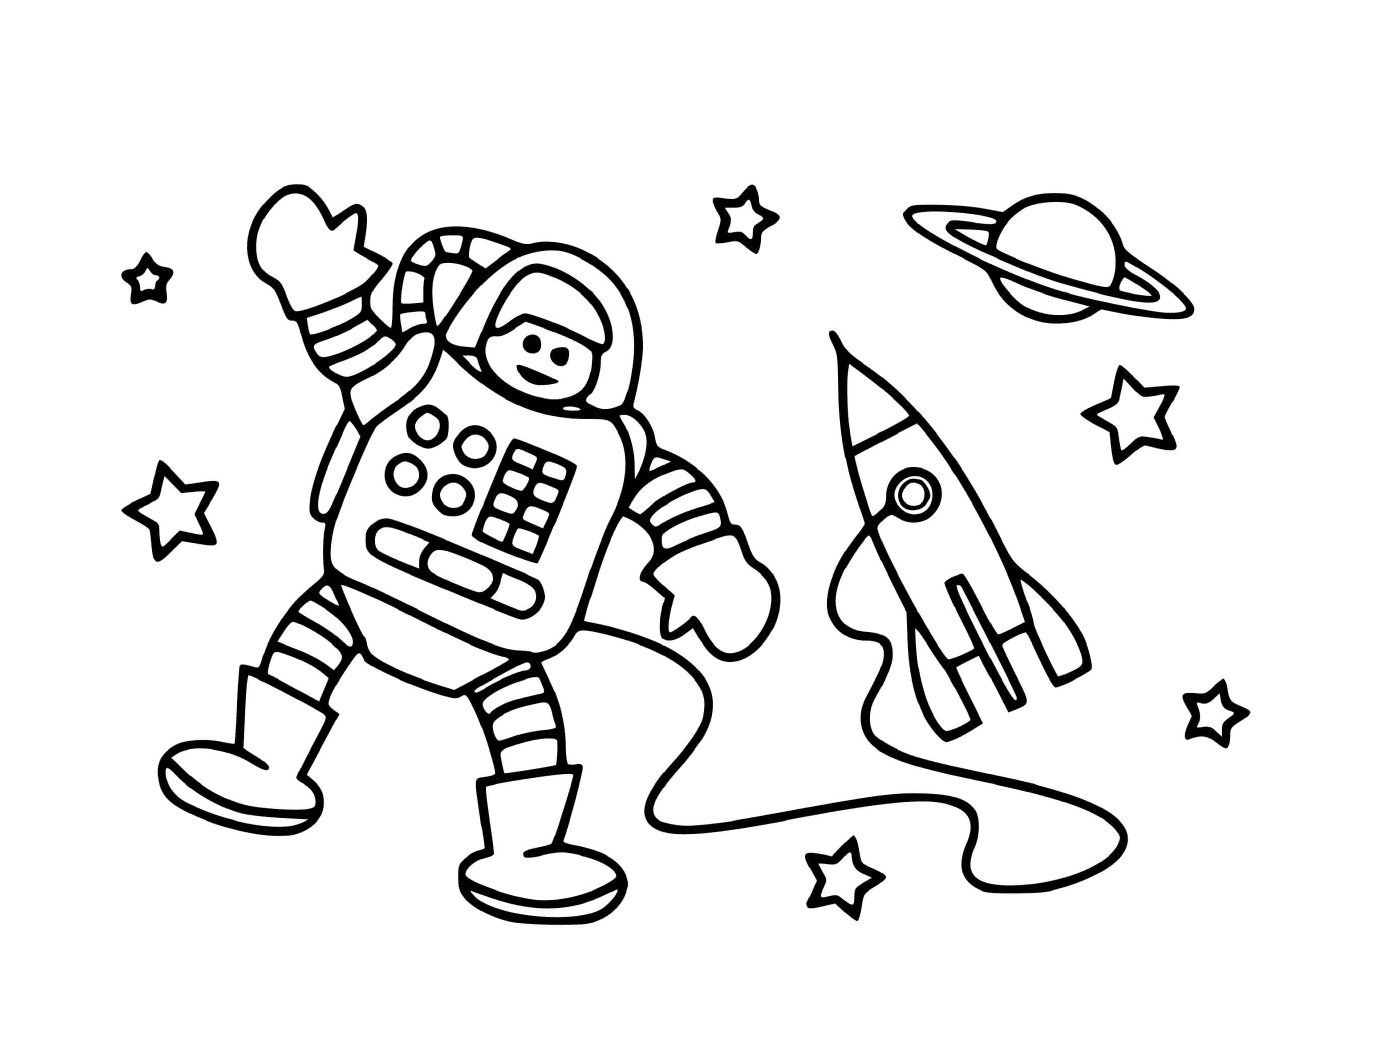  Astronauta y cohete espacial 